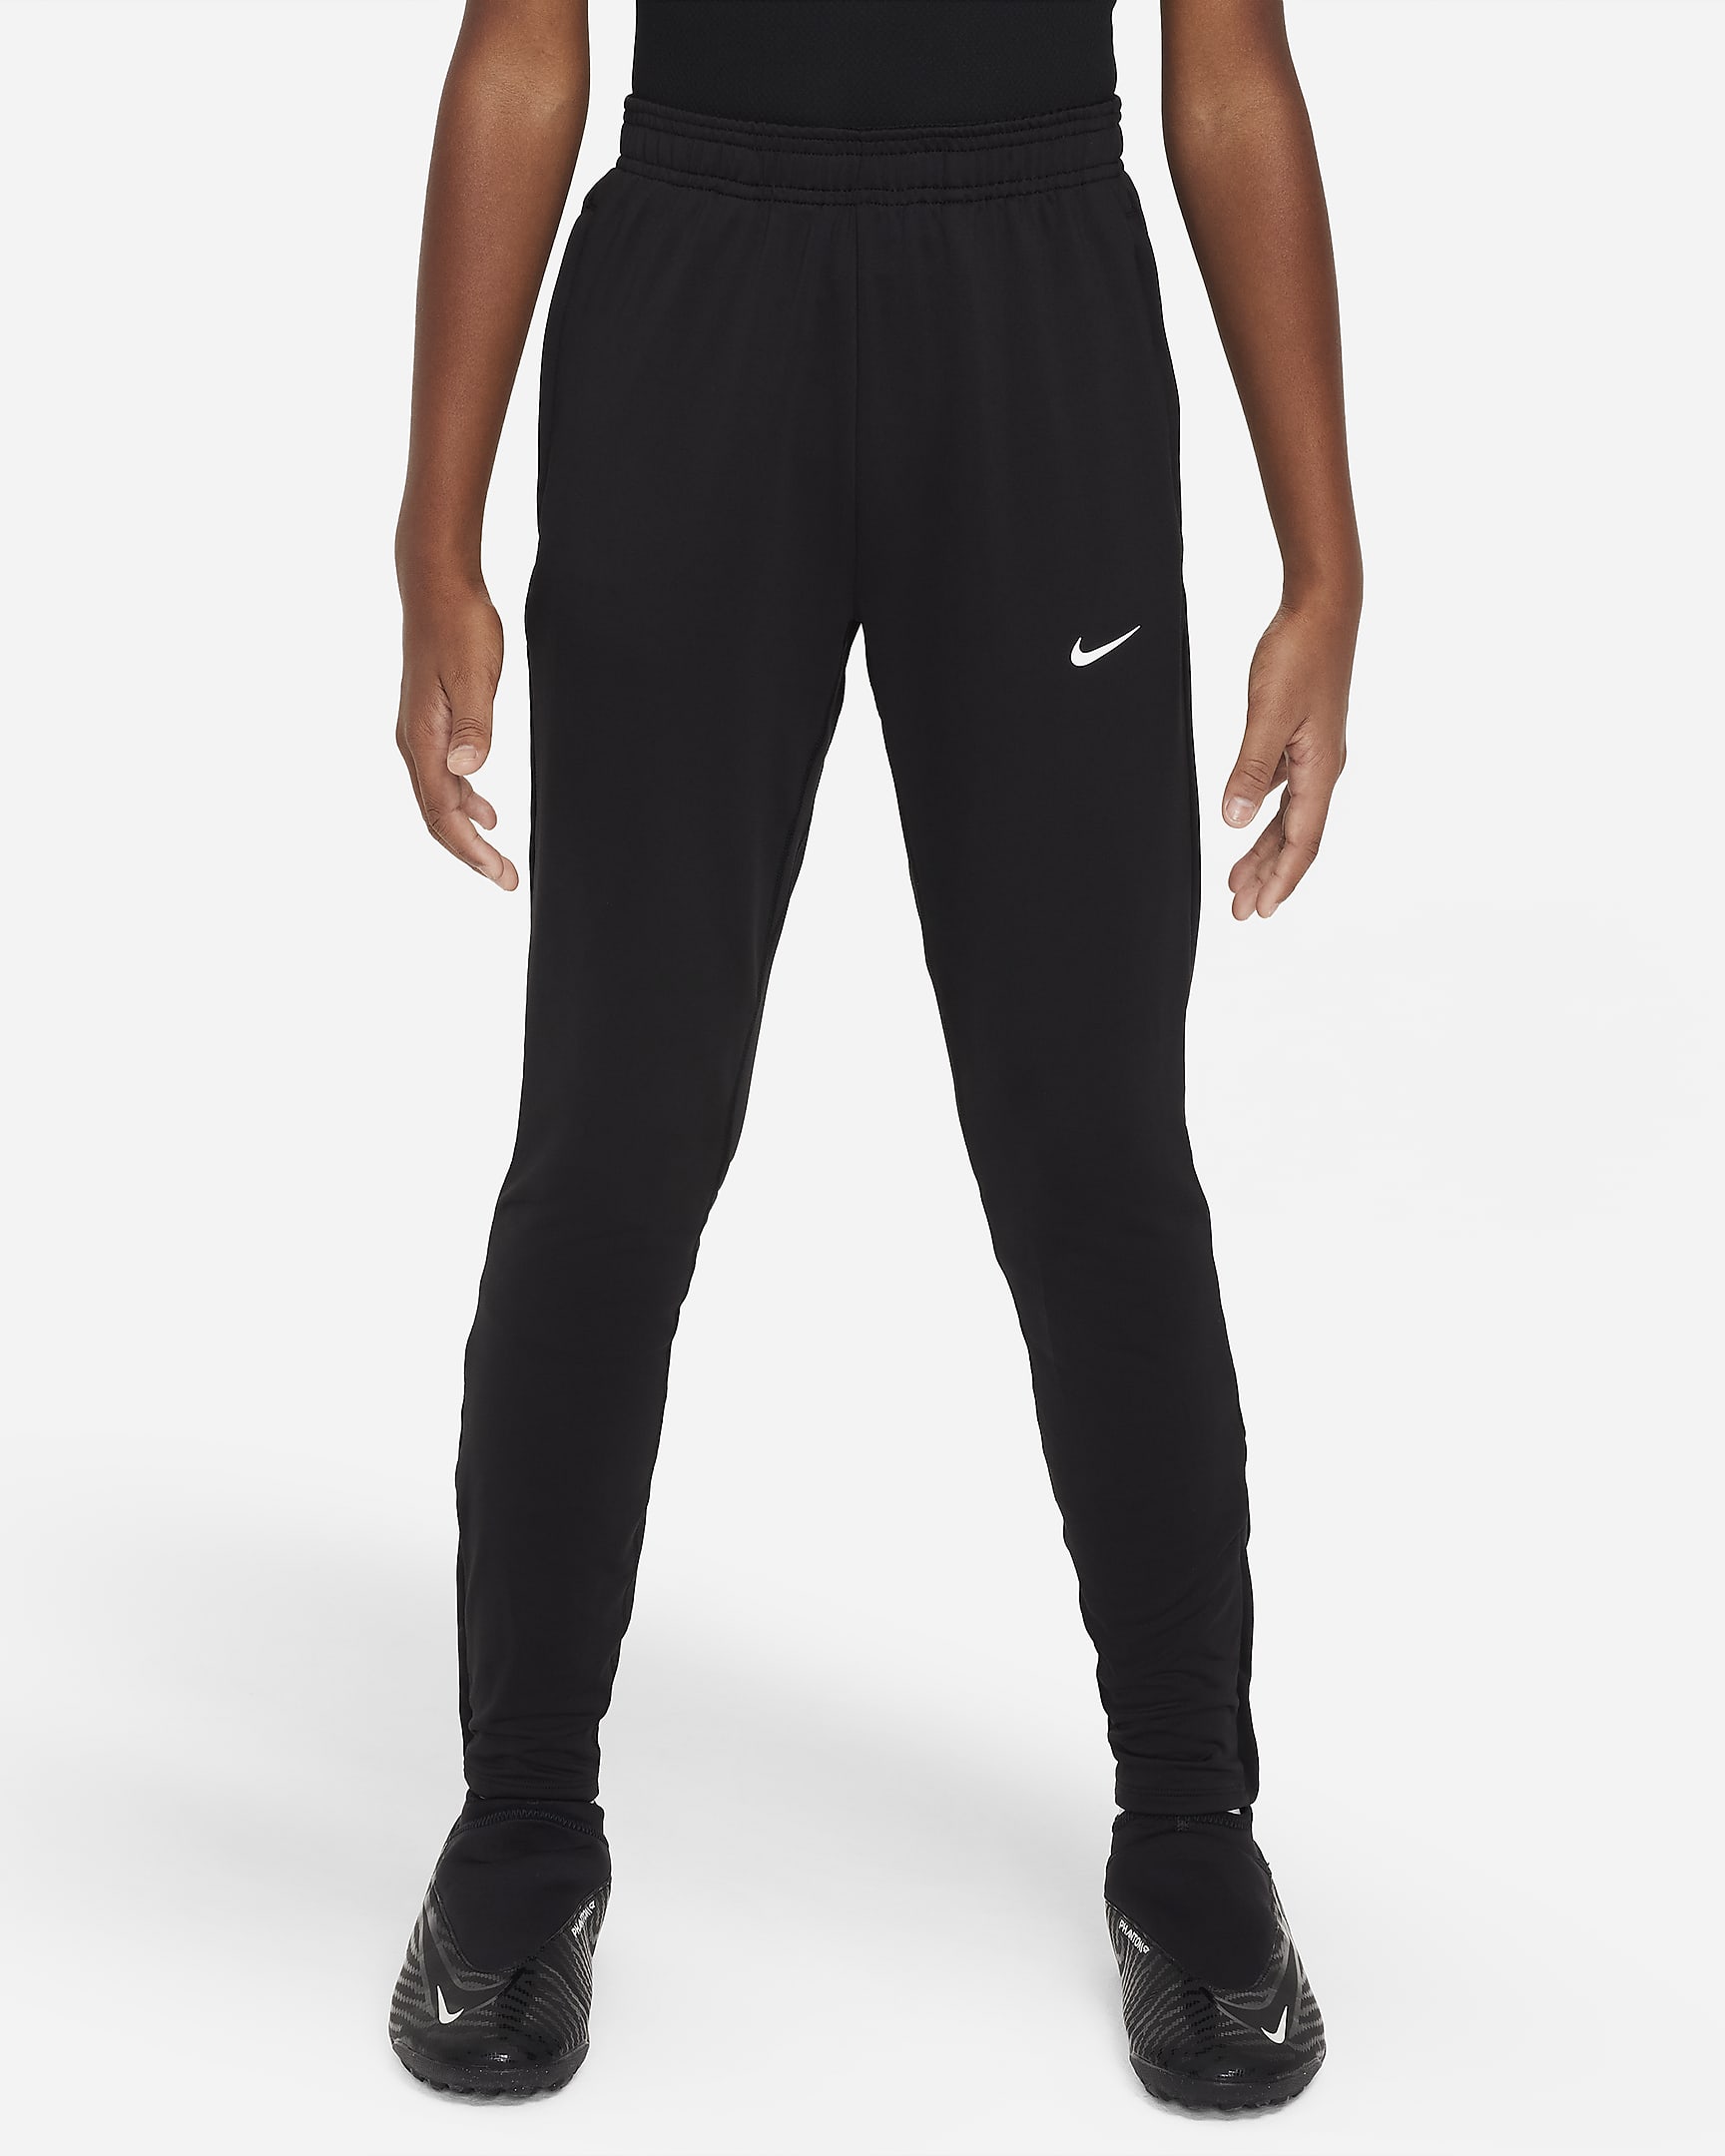 Pantaloni da calcio Nike Dri-FIT Strike – Ragazzi - Nero/Nero/Antracite/Bianco